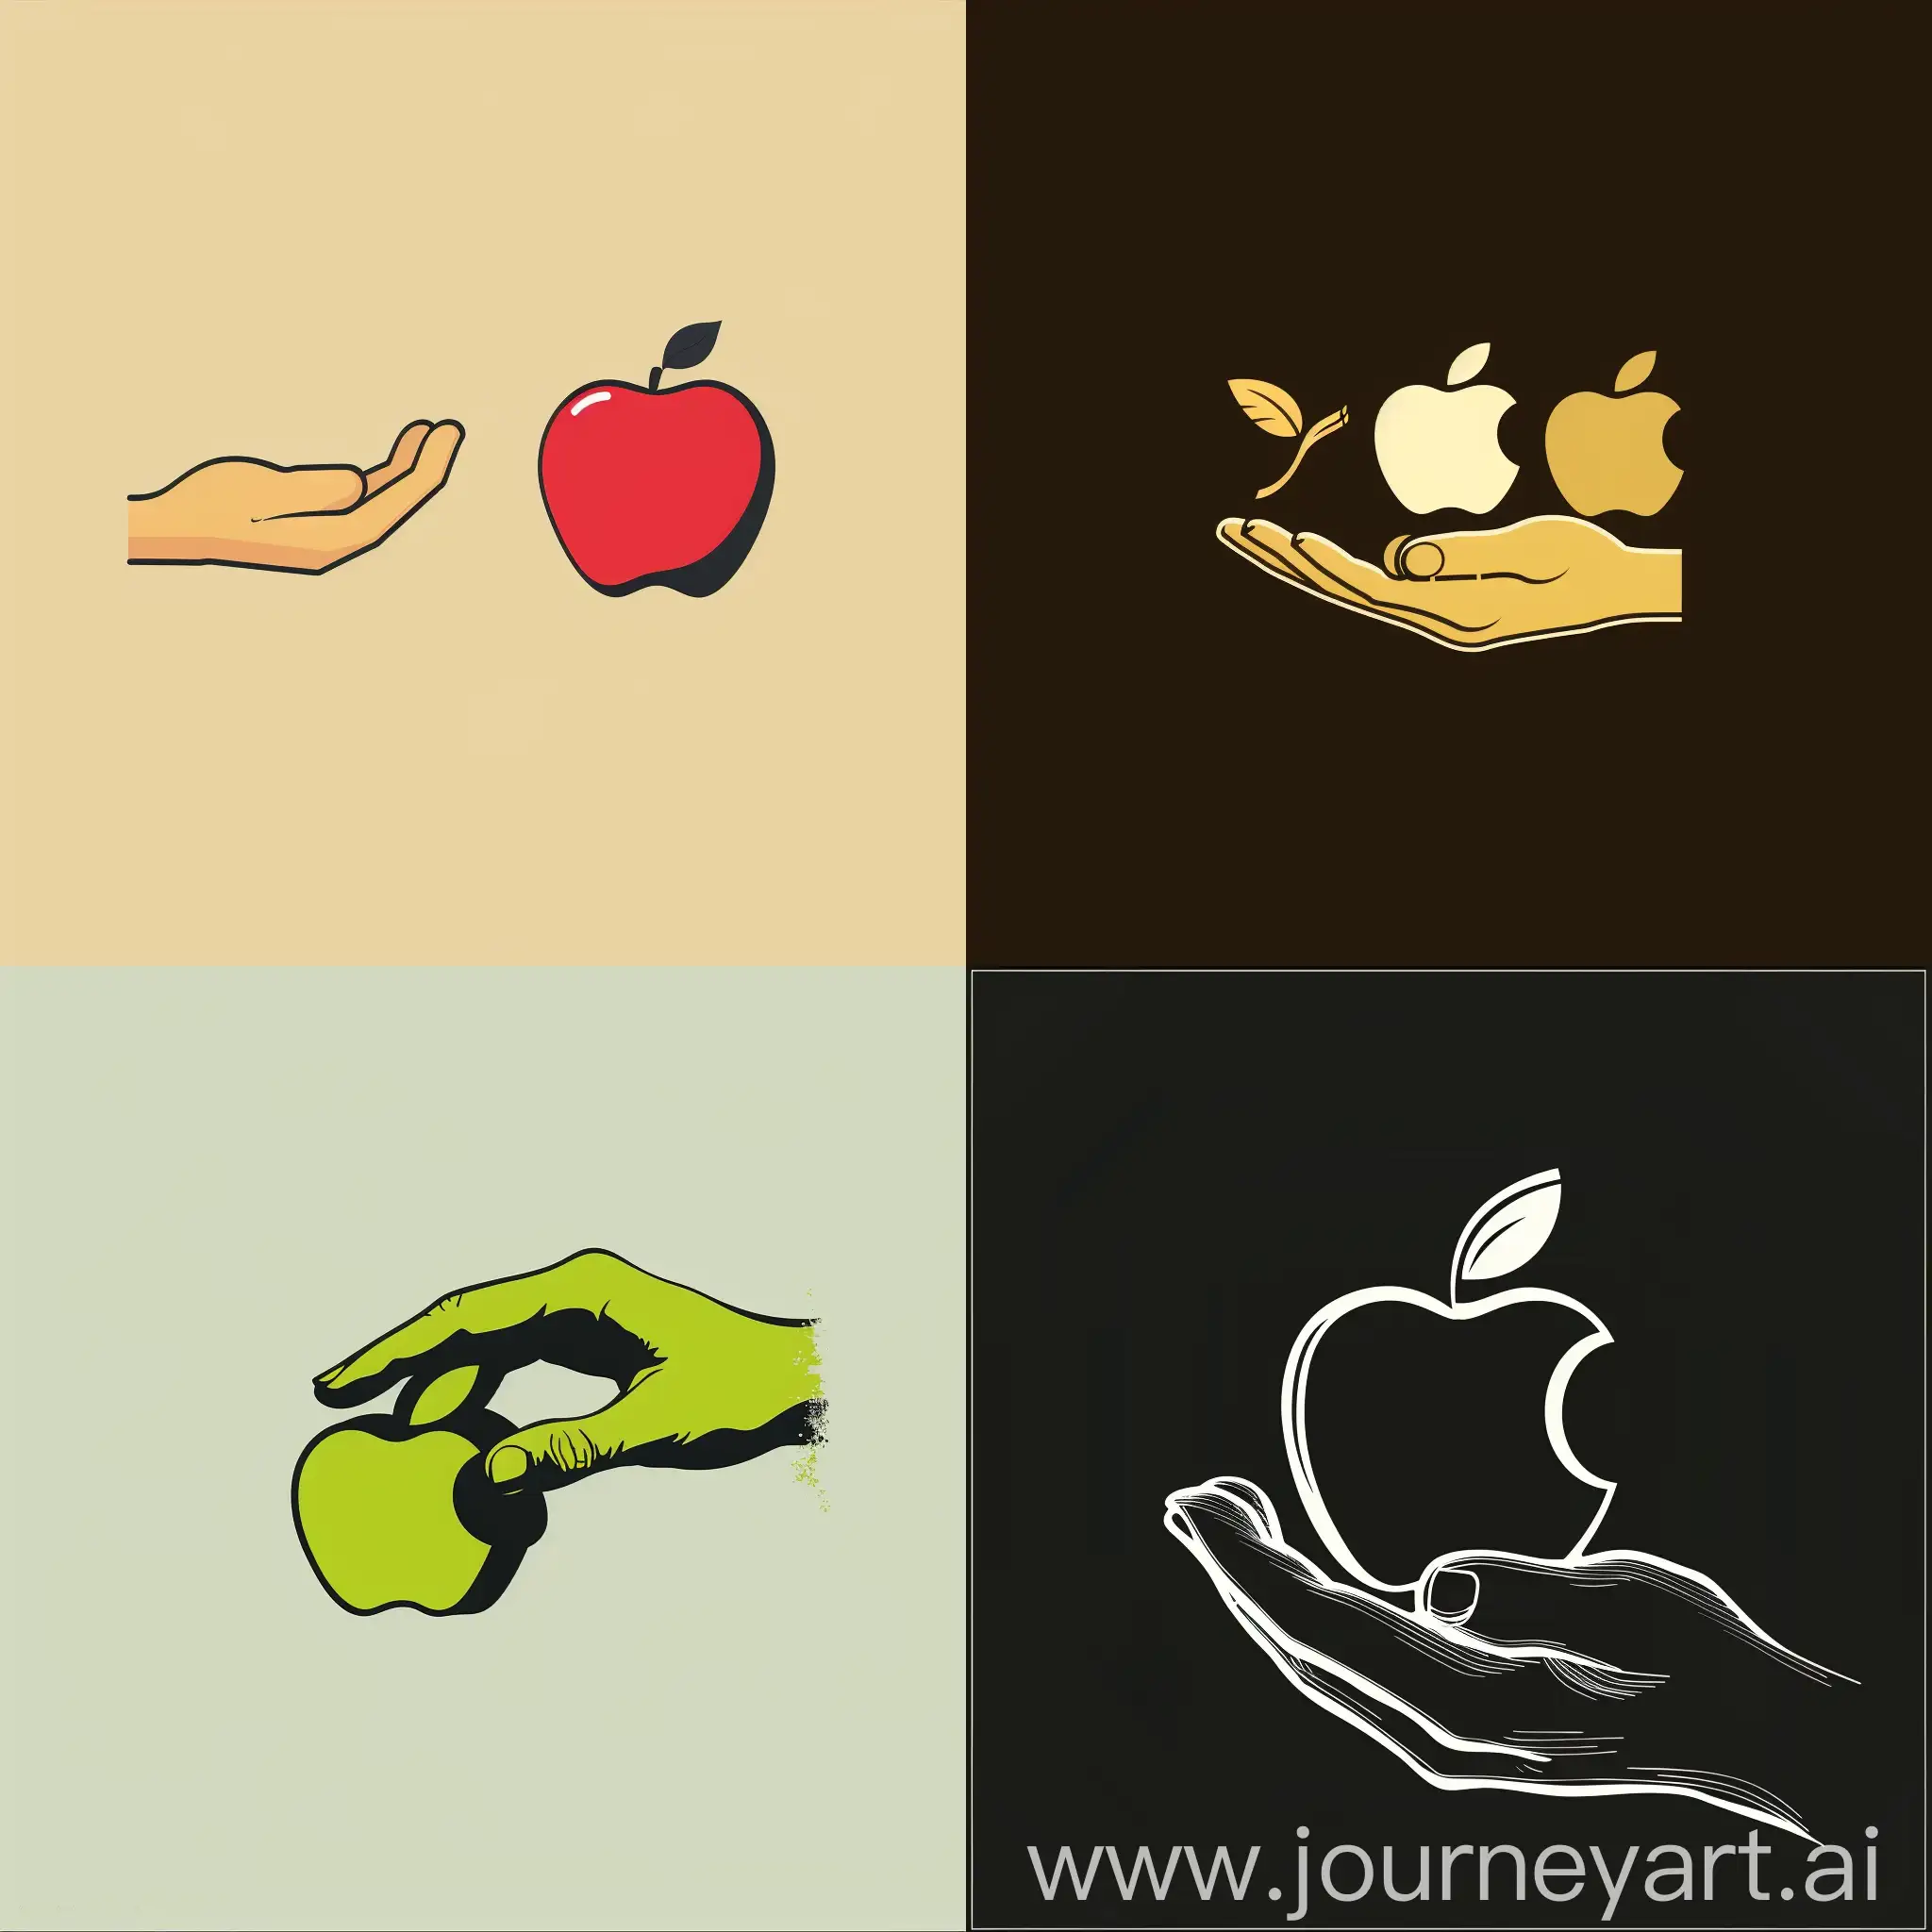 苹果与手的混合
logo
简单
平面设计